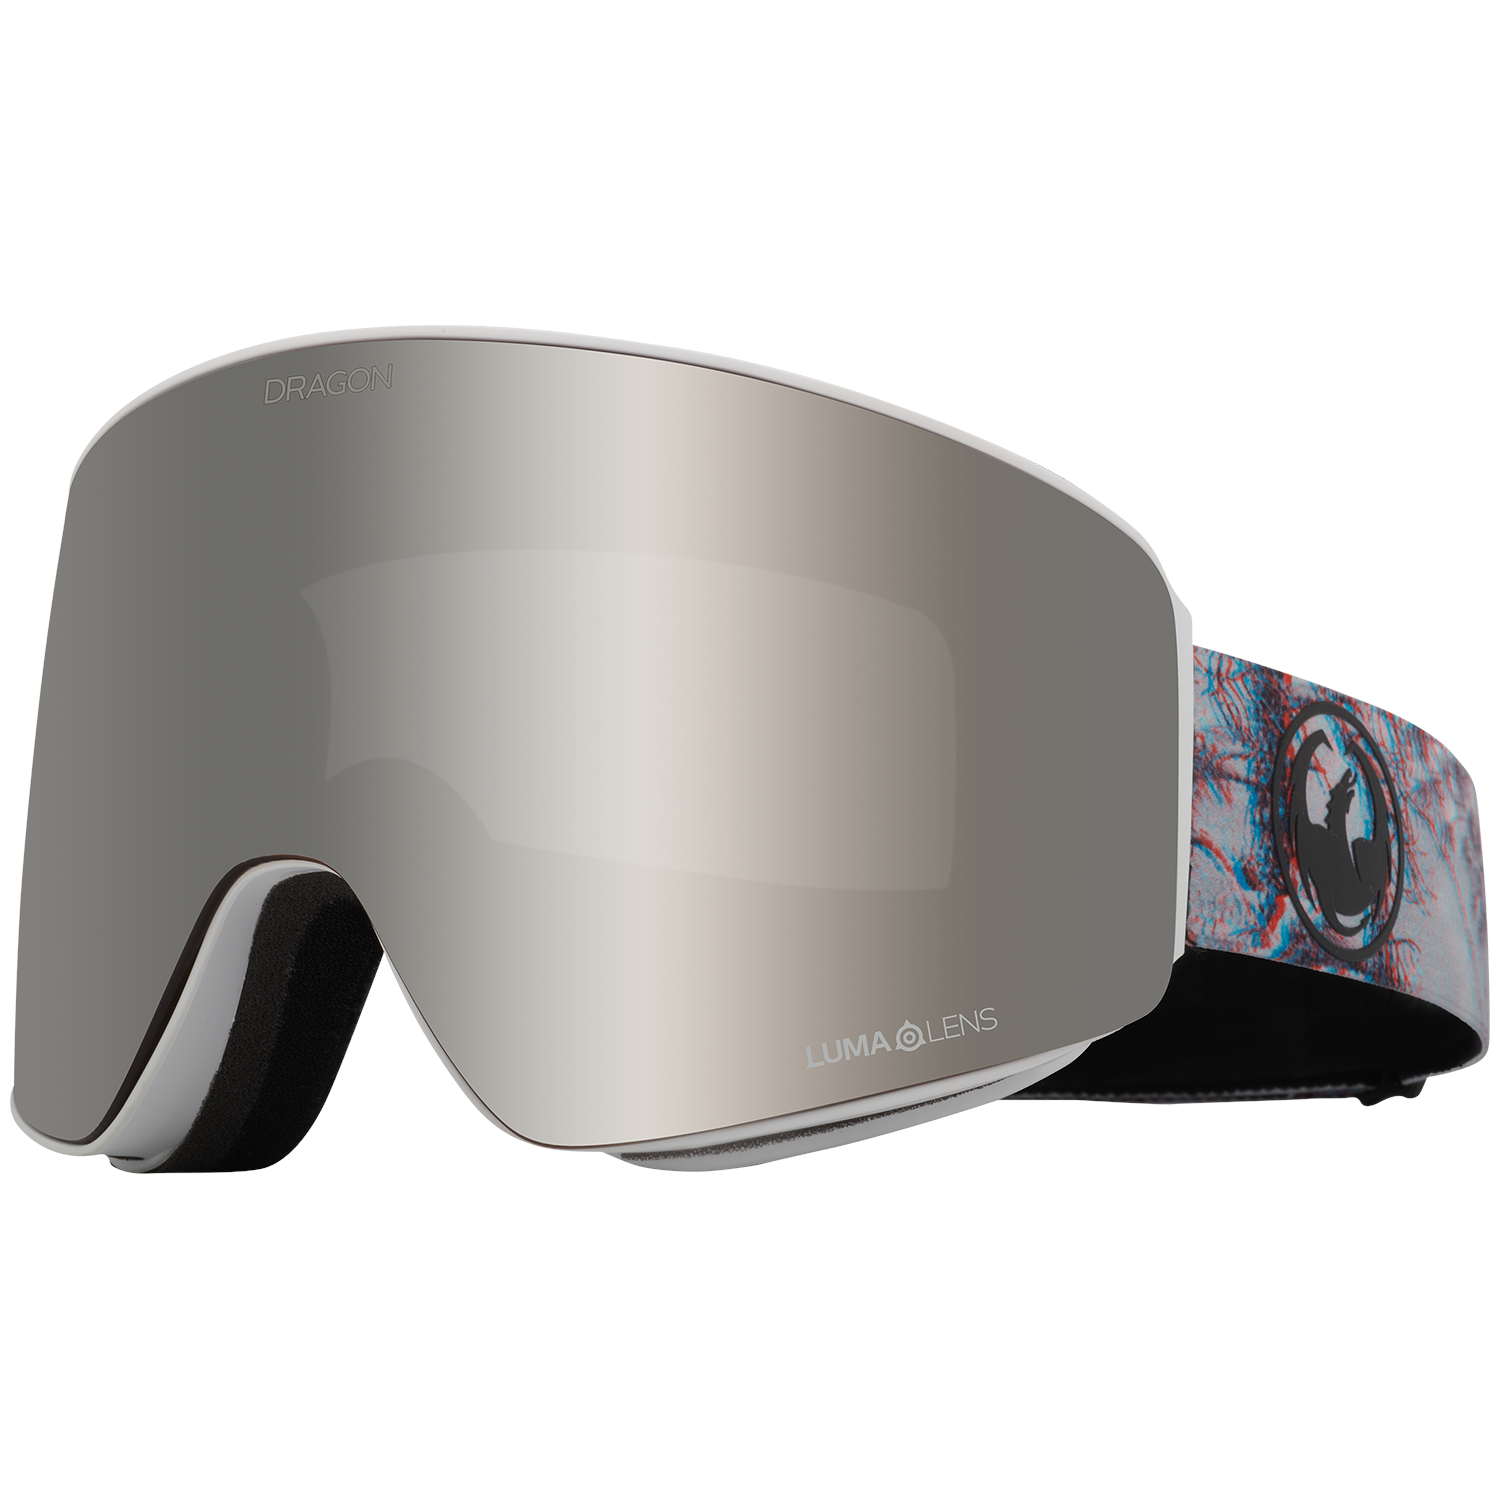 Защитные очки Dragon PXV, серый